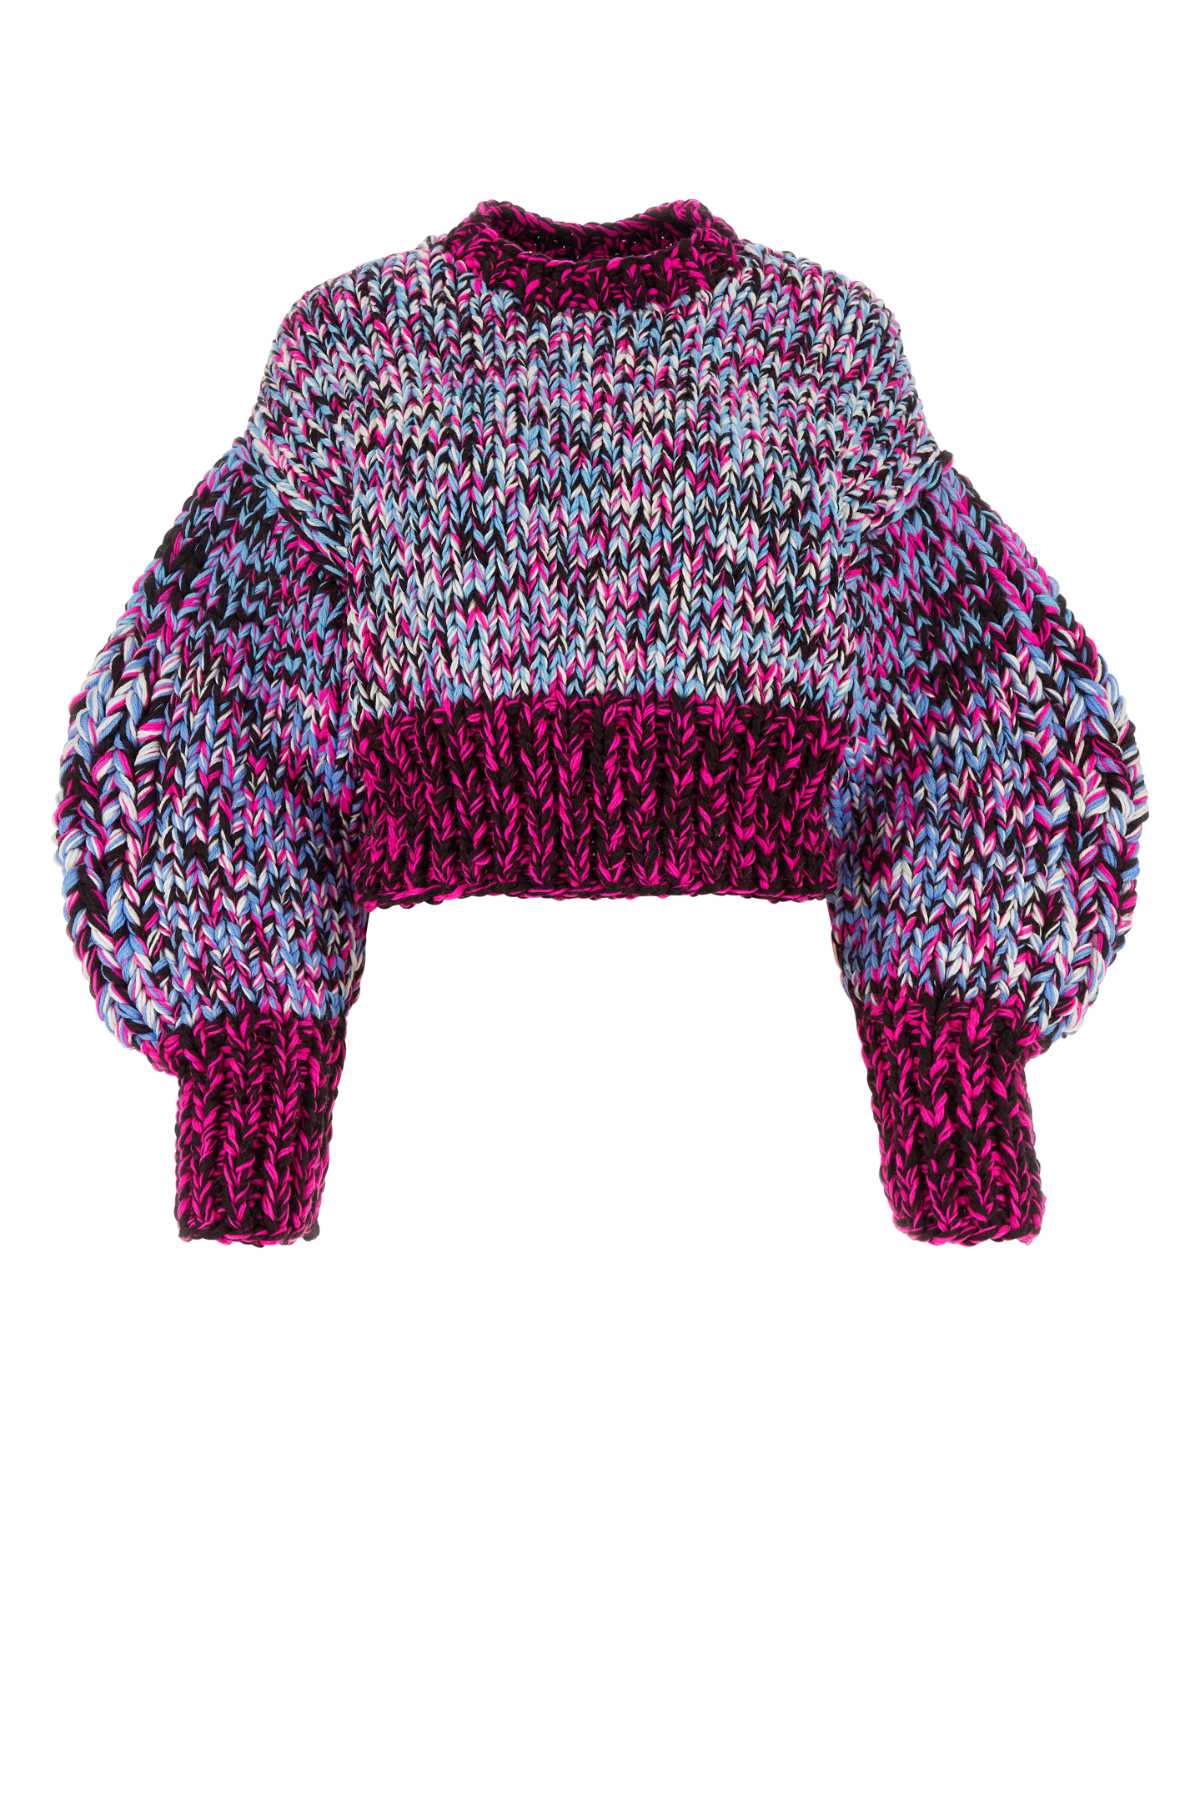 Loewe Multicolor Wool Sweater In Pinkmulticolor